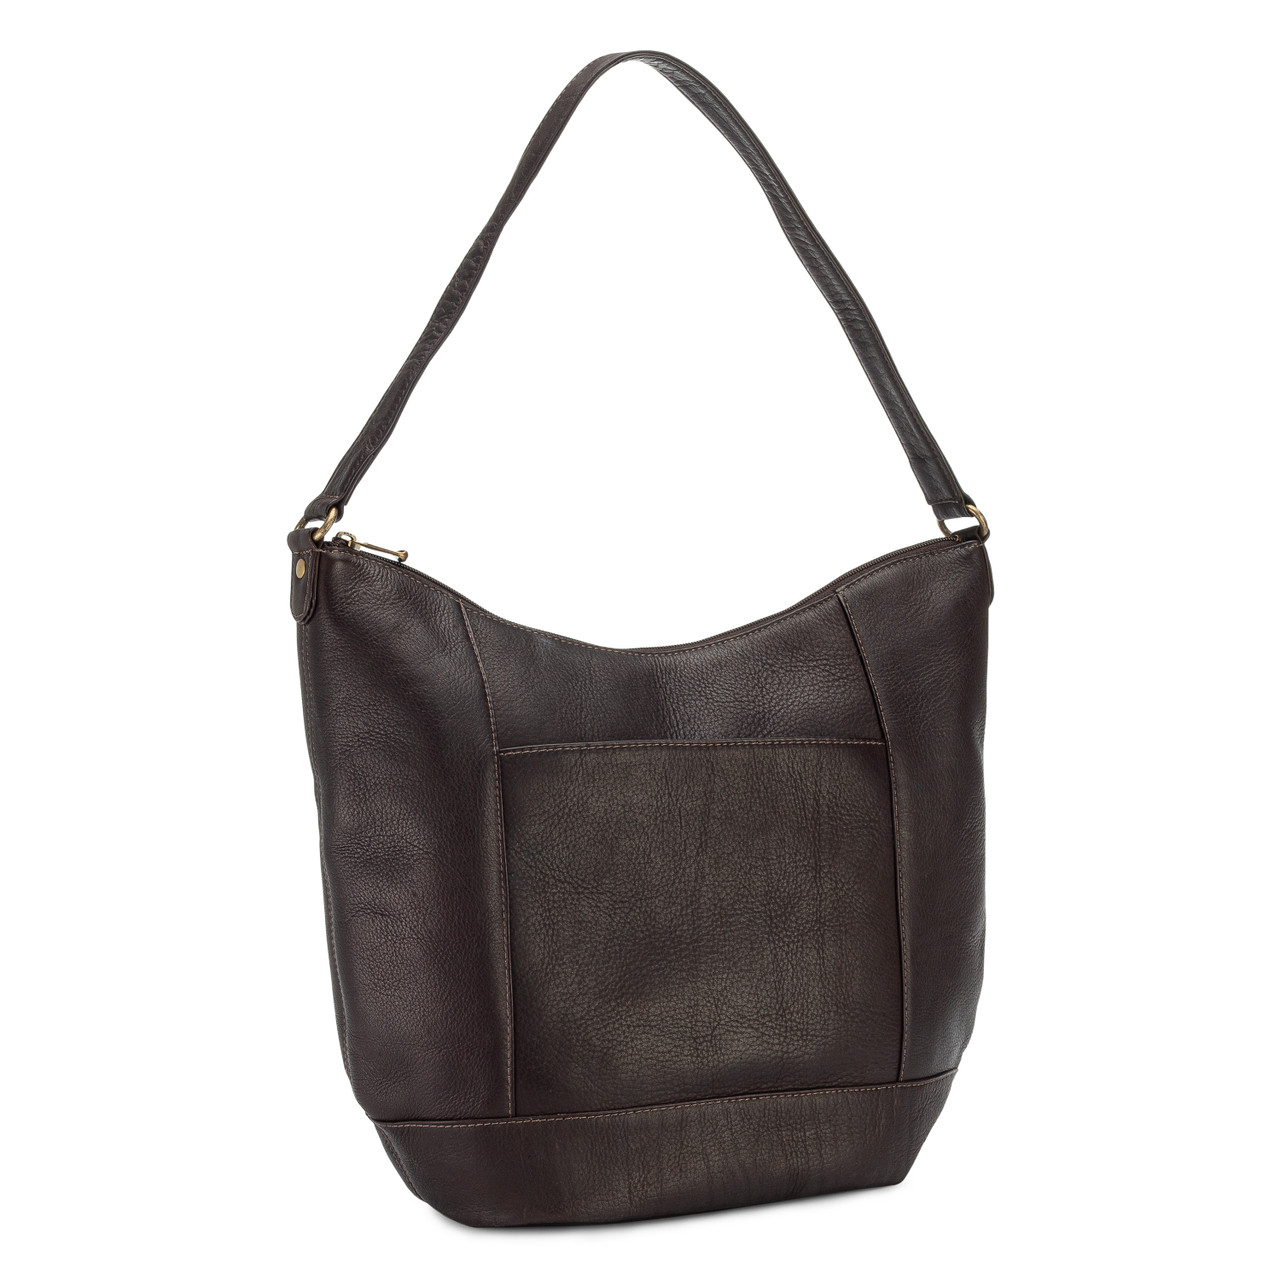 Buy Lavie Polani Women's Large Hobo Bag (Maroon) Online